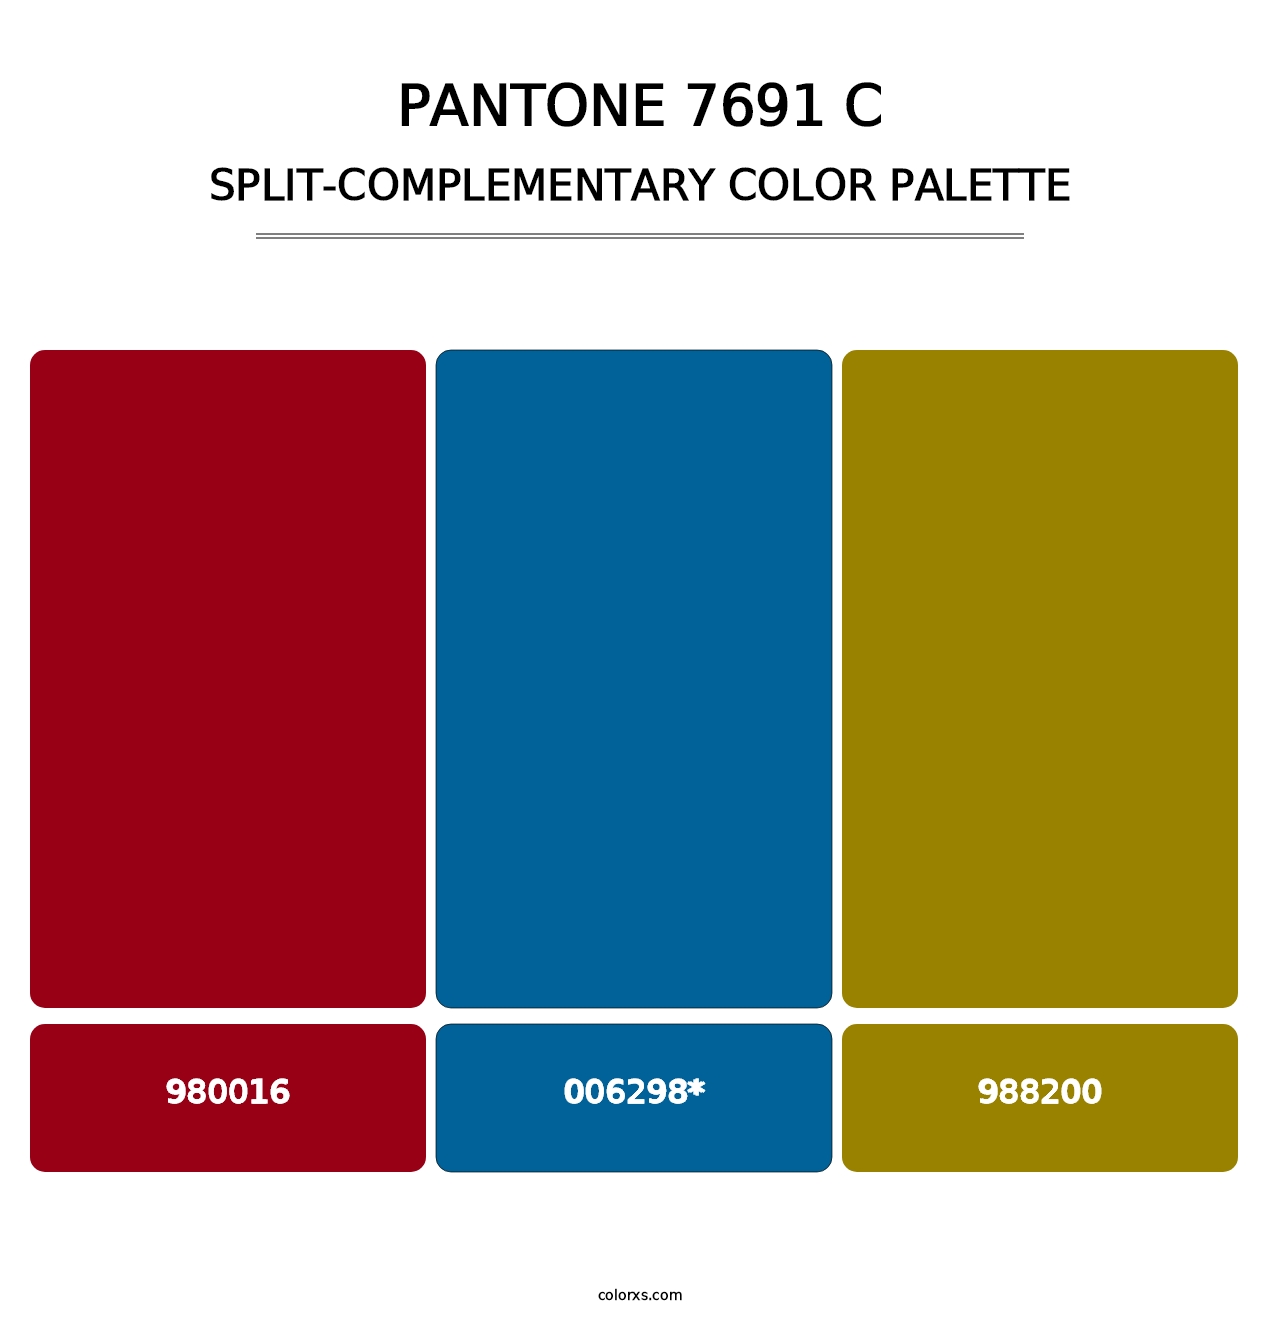 PANTONE 7691 C - Split-Complementary Color Palette